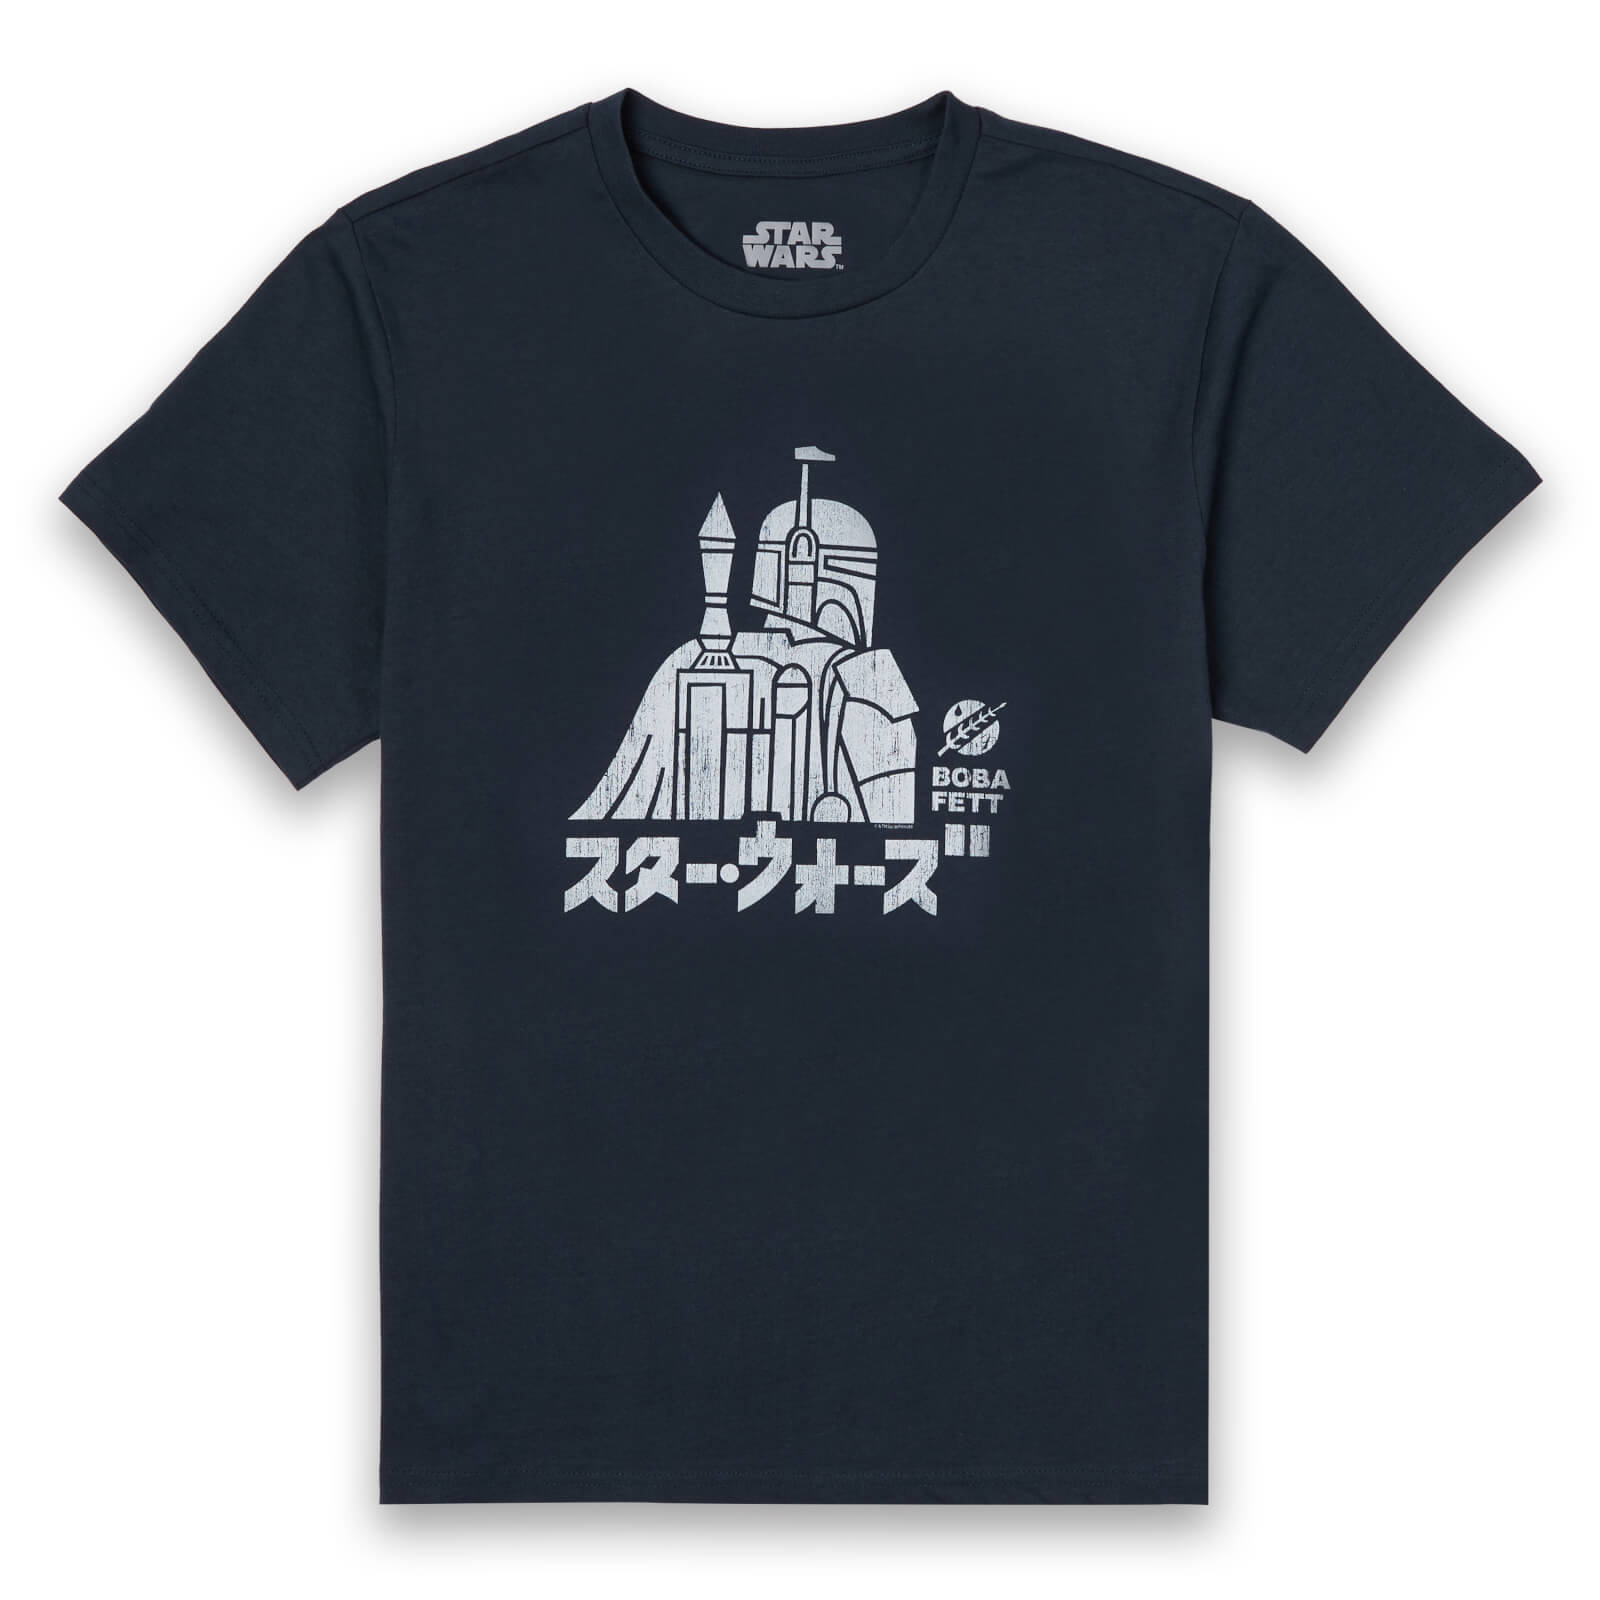 Star Wars Kana Boba Fett Men's T-Shirt - Navy - S